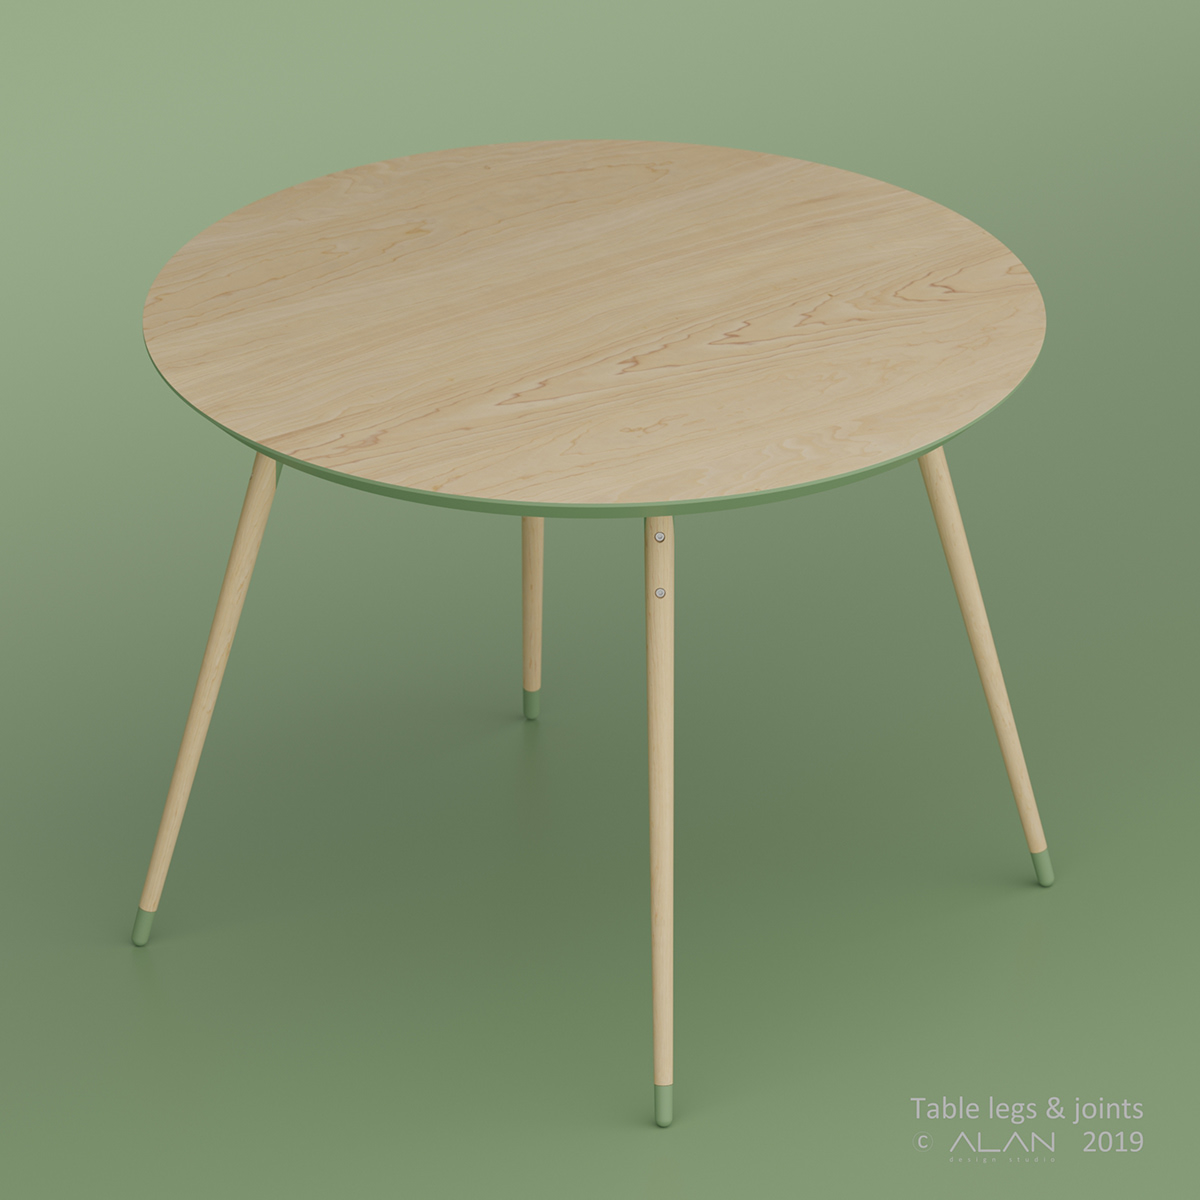 alankravchenko design furniture table legs joints